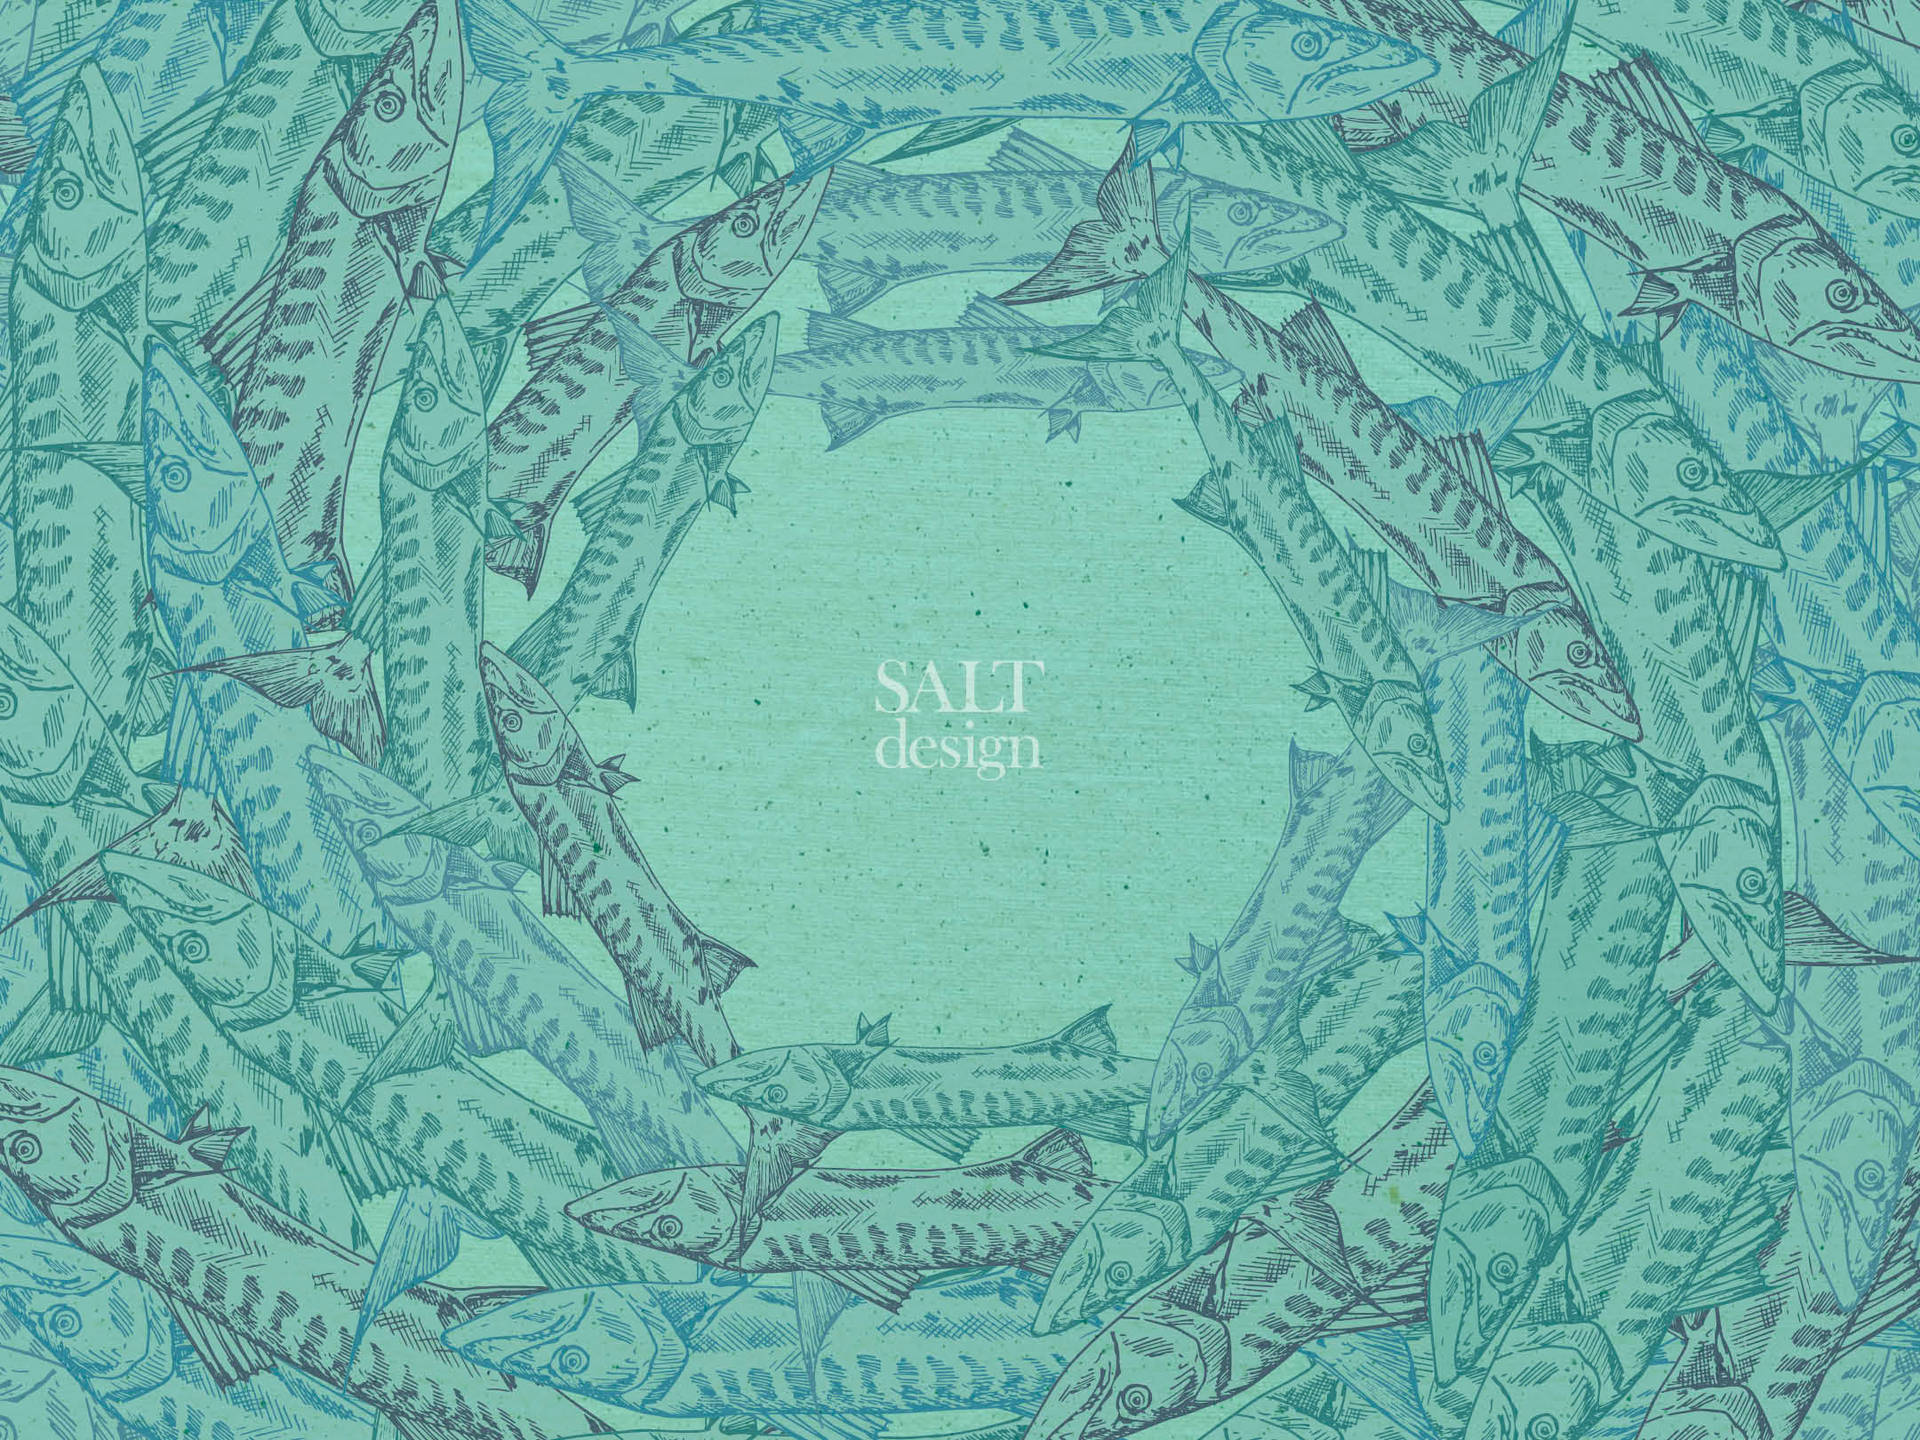 Salt design - dække kunst af isbjerge med en blå himmel Wallpaper